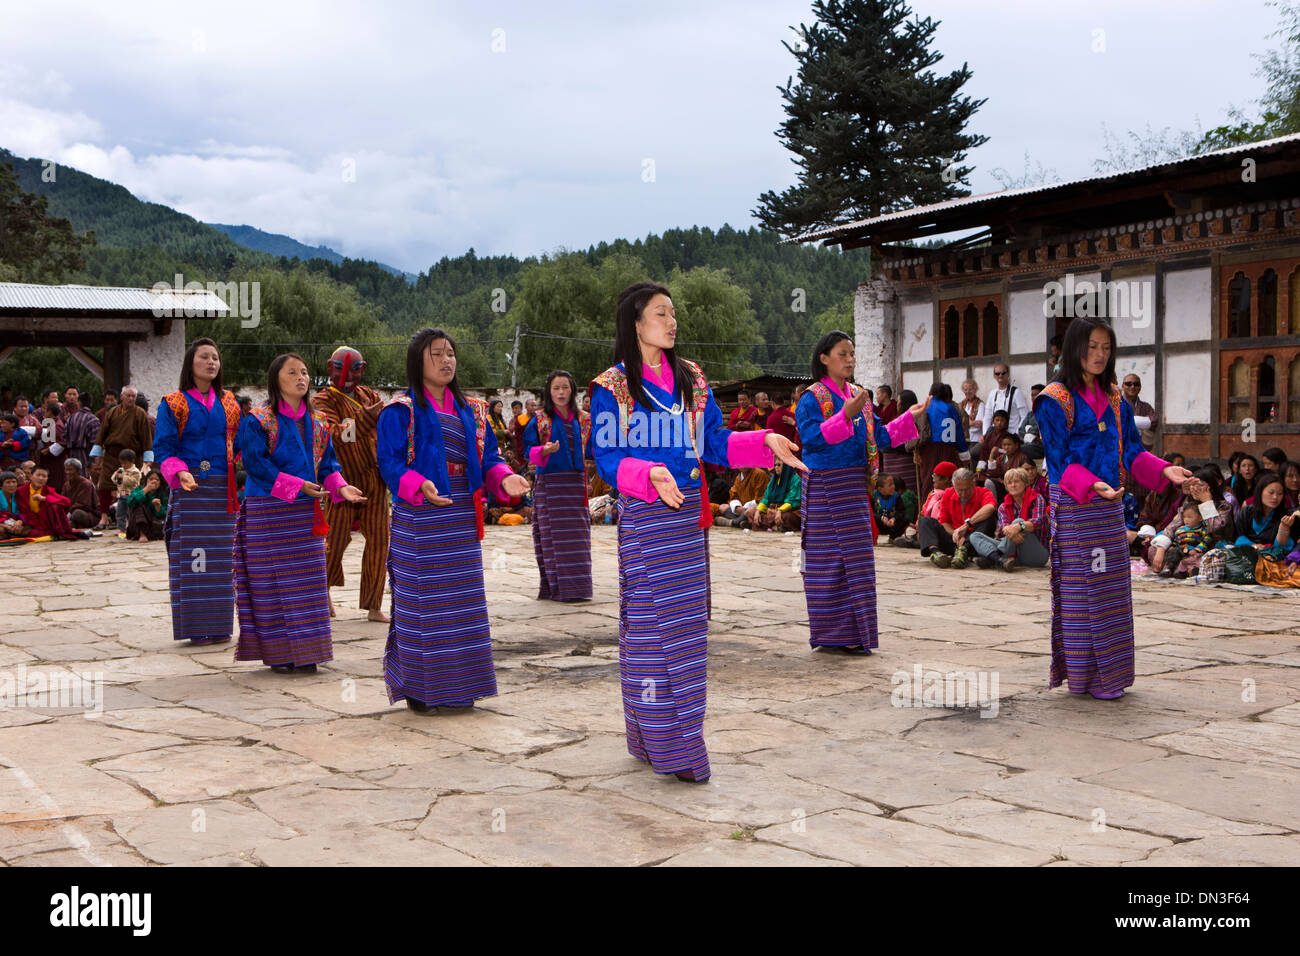 Bhutan, Thangbi Mani Lhakang Tsechu Festivals, traditionell gekleidet weibliche Volkstänzer Stockfoto